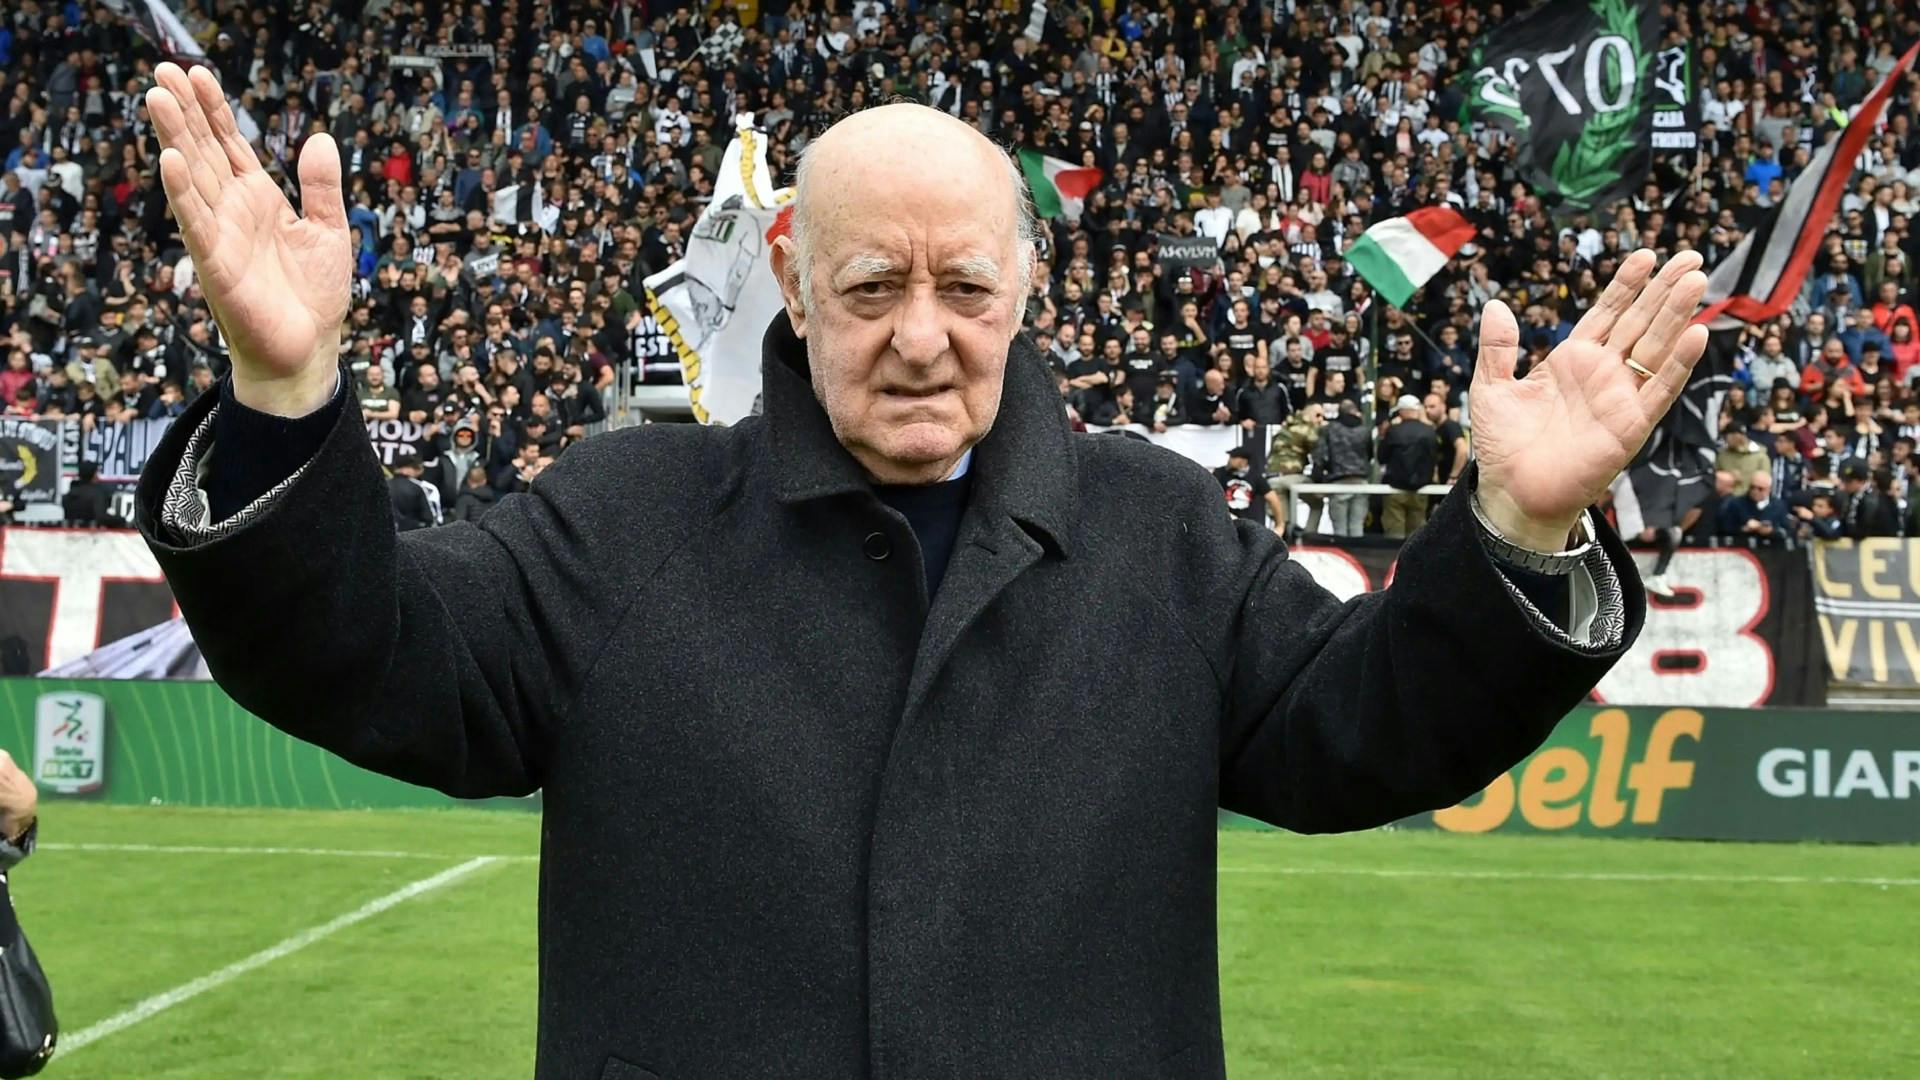 Addio a Carlo Mazzone, il saluto del mondo del calcio